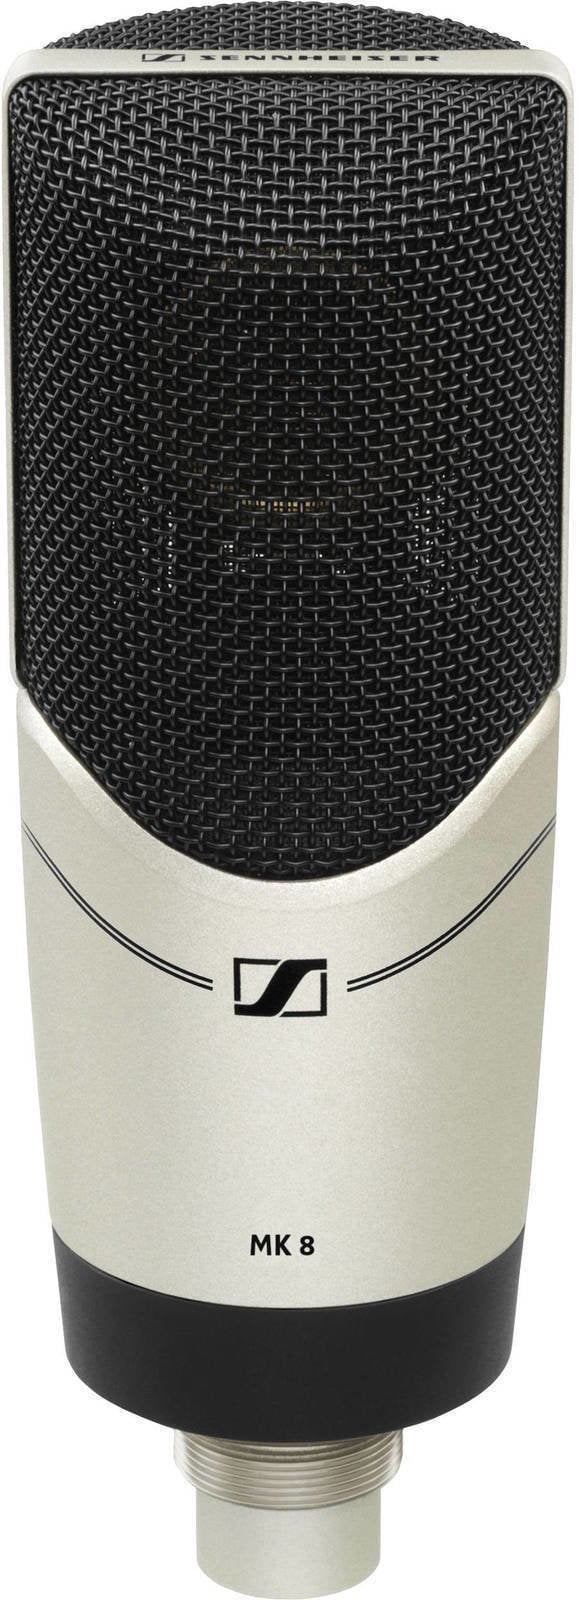 Microphone à condensateur pour studio Sennheiser MK 8 Microphone à condensateur pour studio